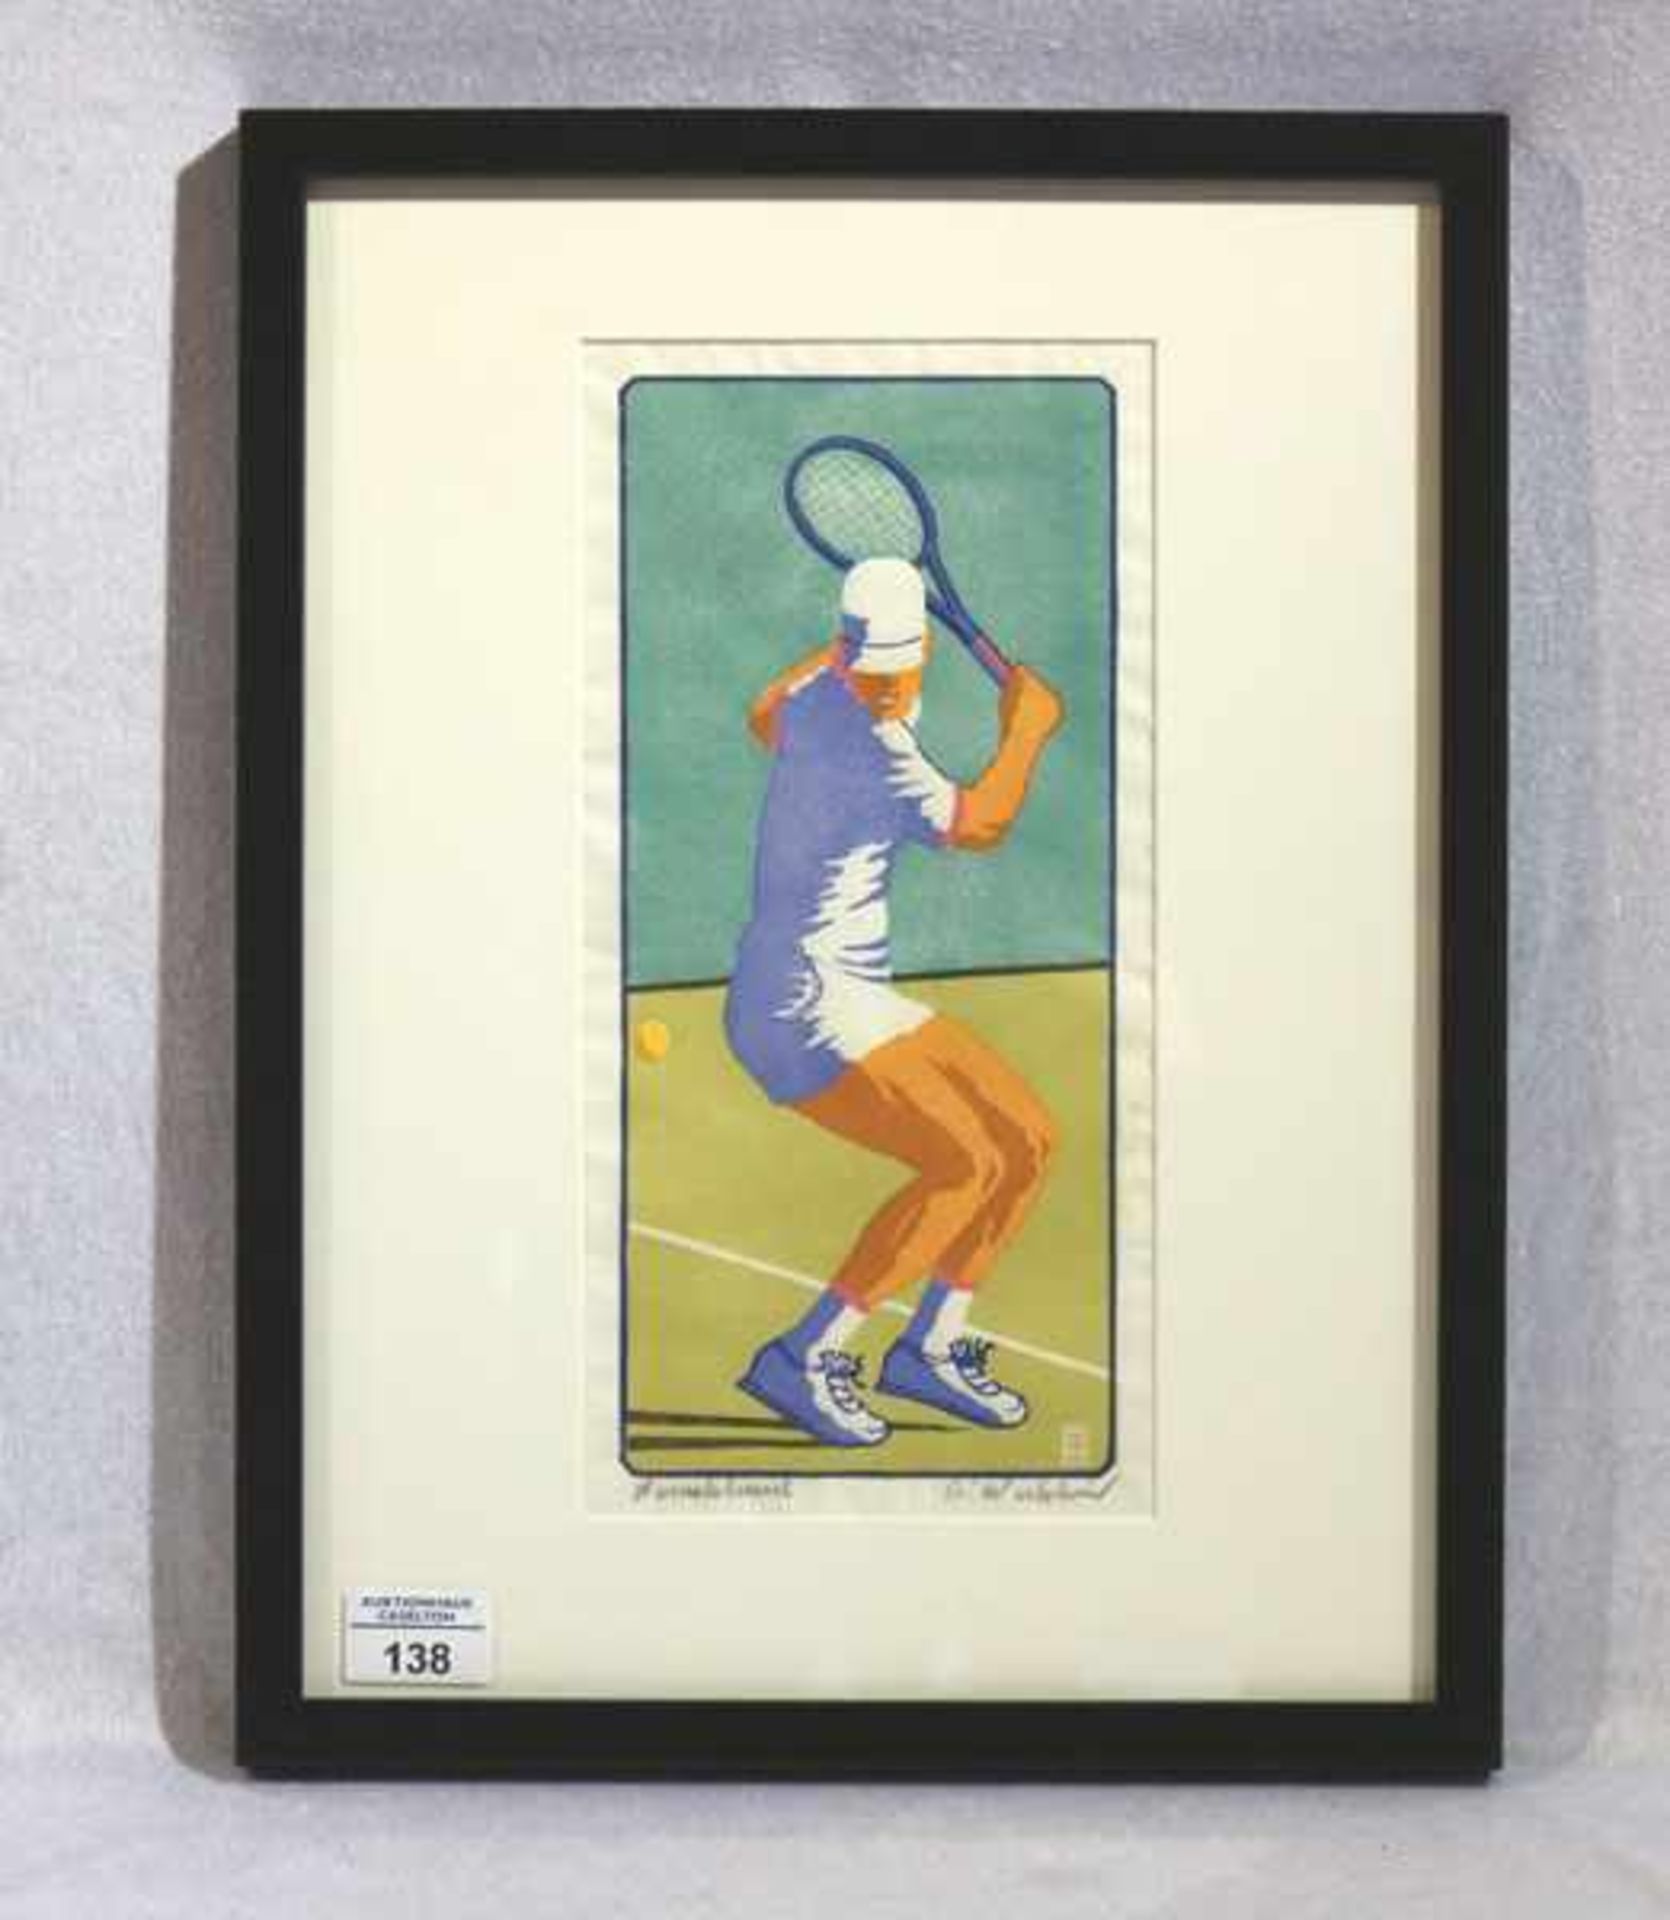 Original Holzschnitt 'Tennisspieler', signiert Peter Waldner, Tirol, mit Passepartout unter Glas